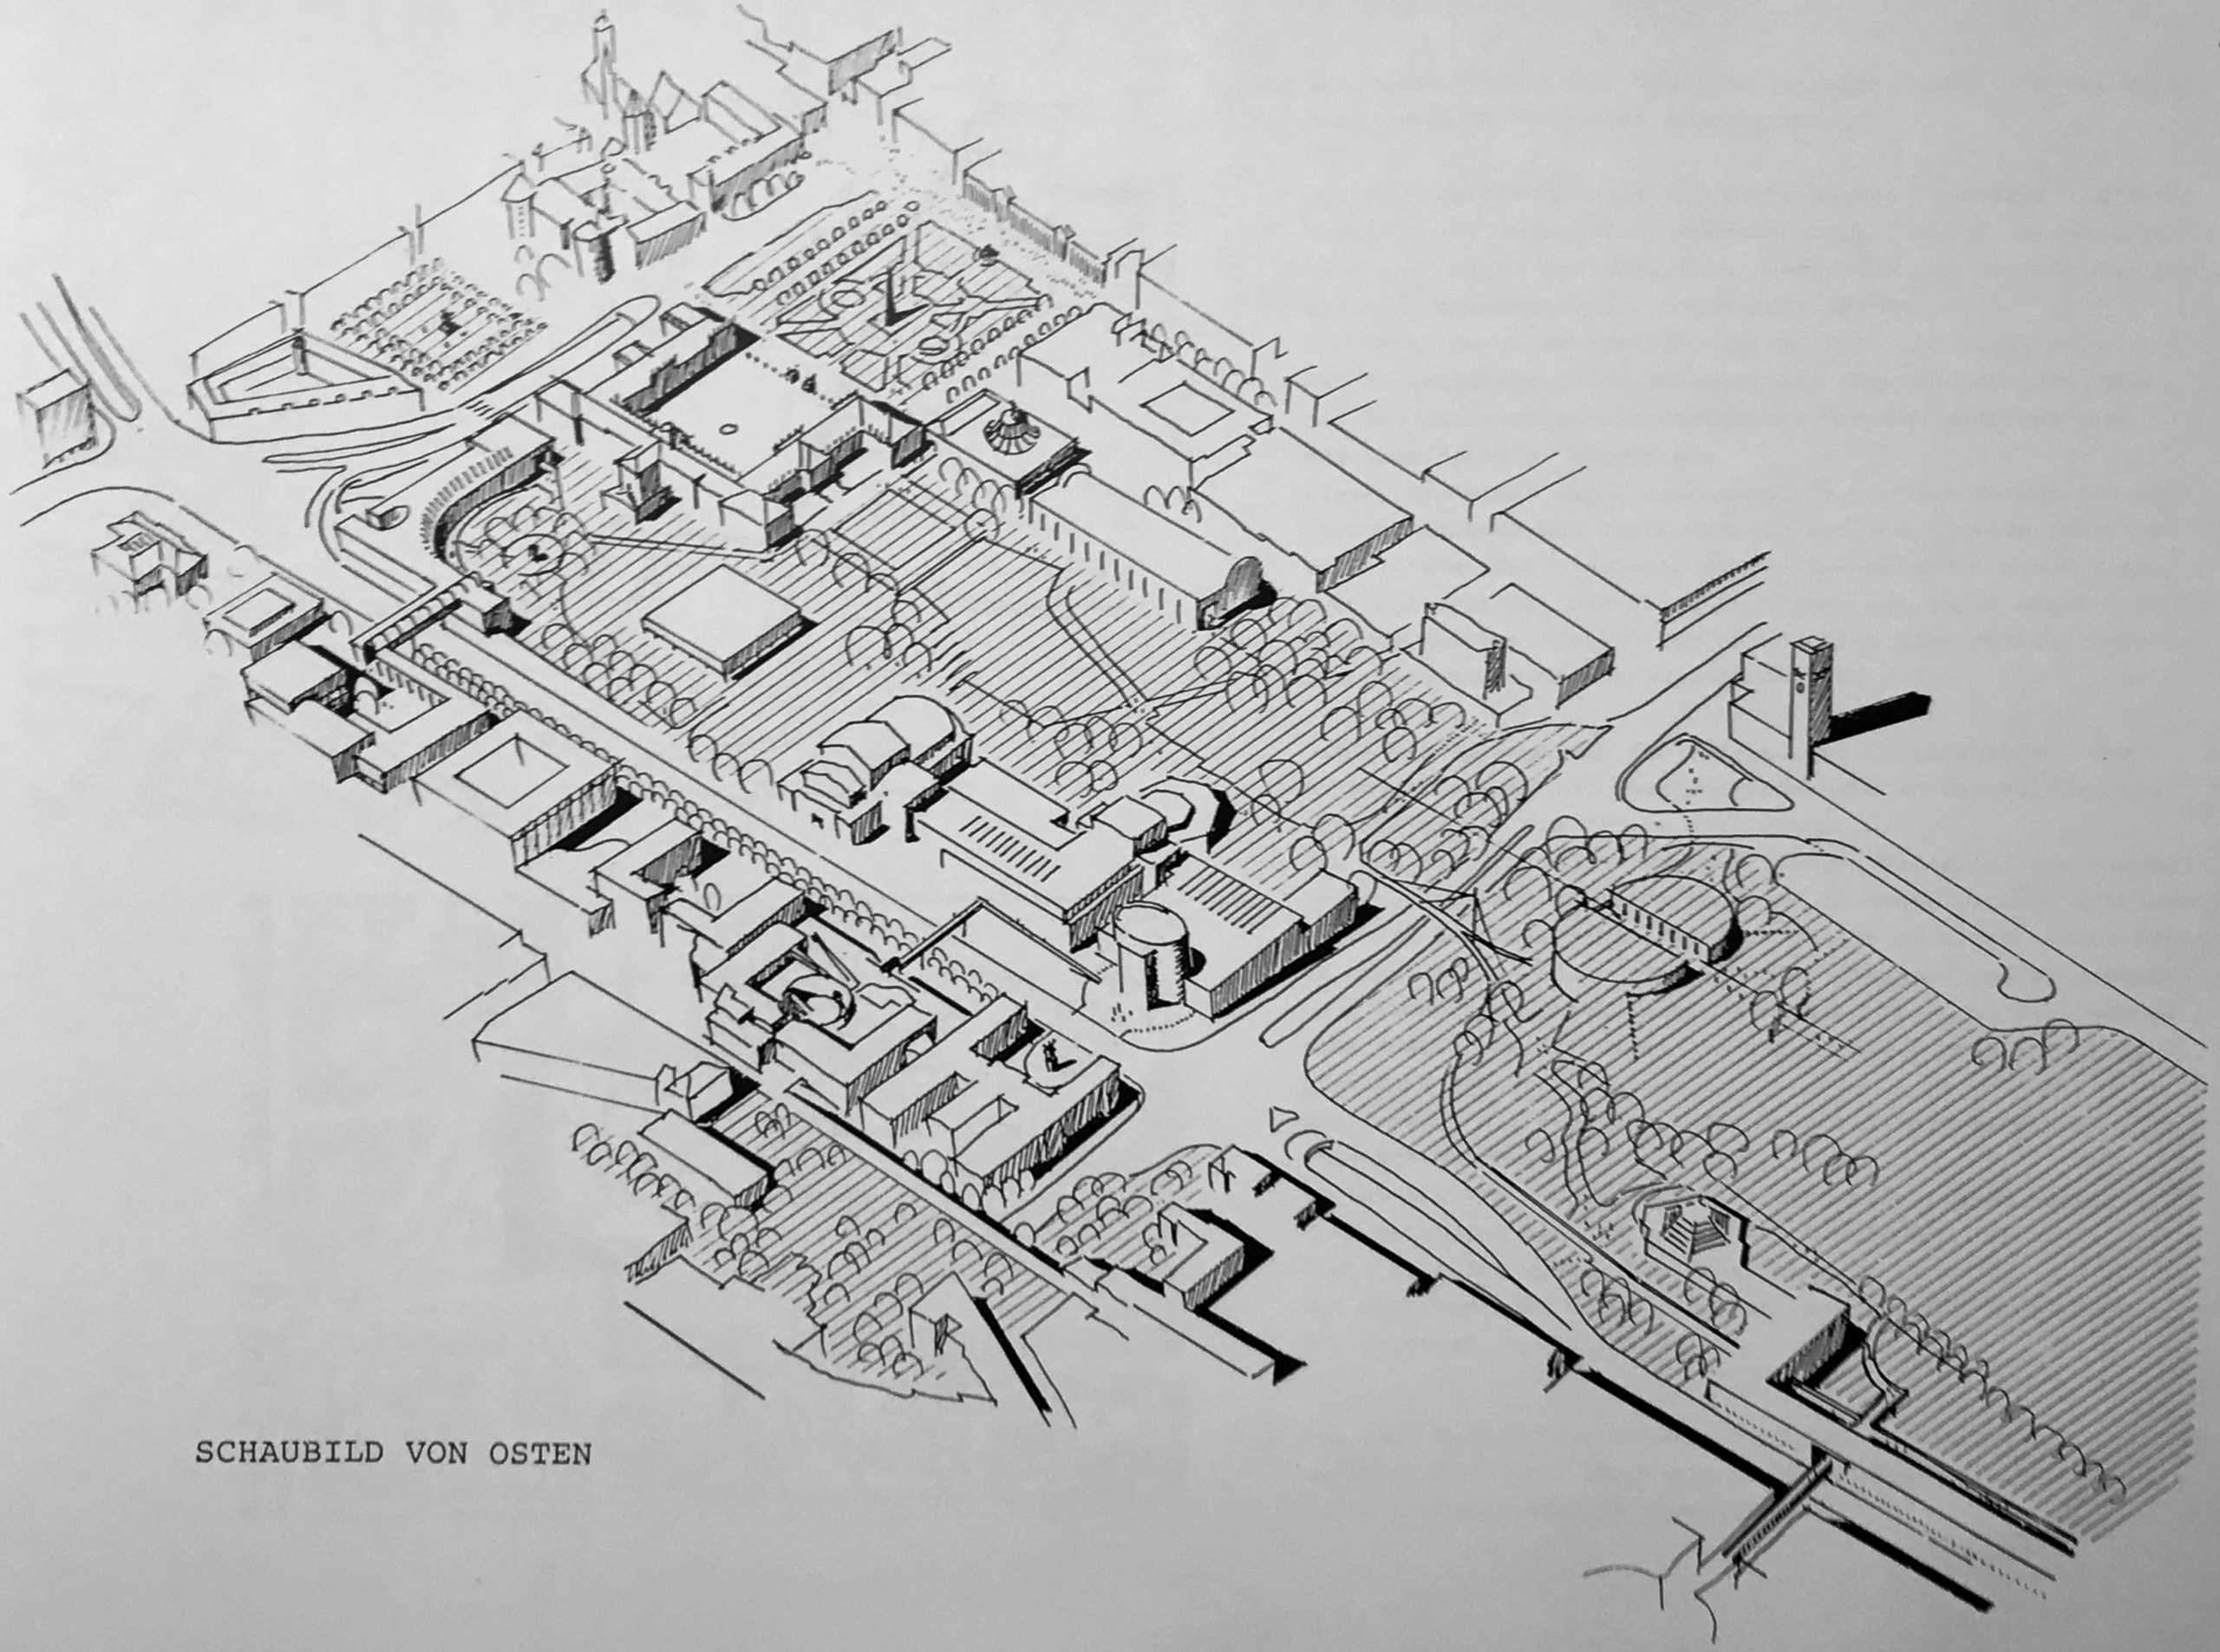 Vorschläge für die Kulturmeile von Othmar Barth 1987